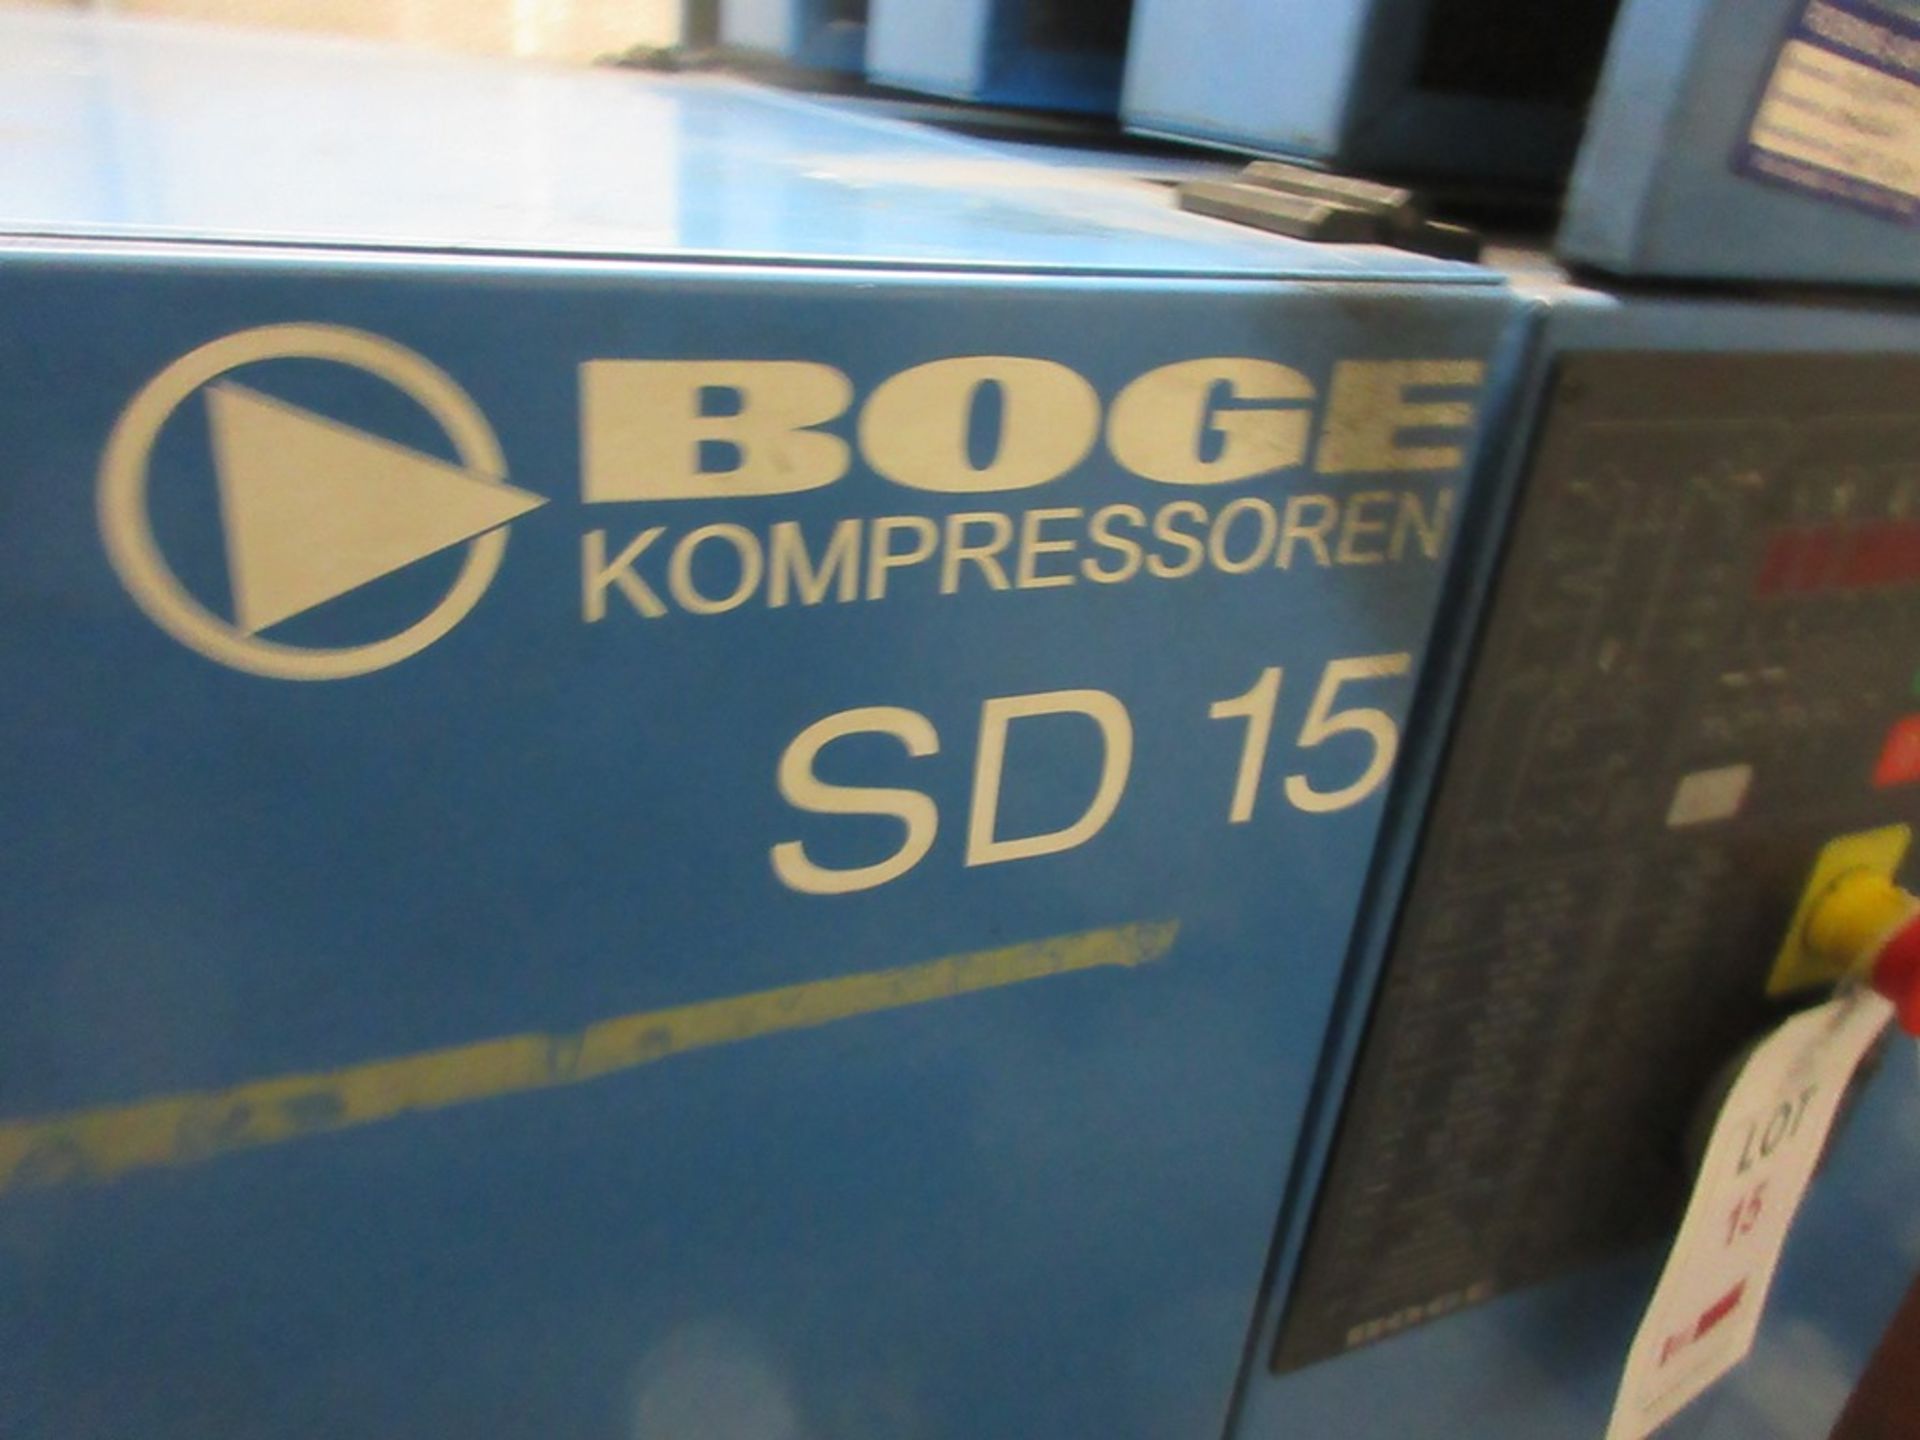 Boge Kompressor SD15 Packaged air compressor (1999) - Image 4 of 10